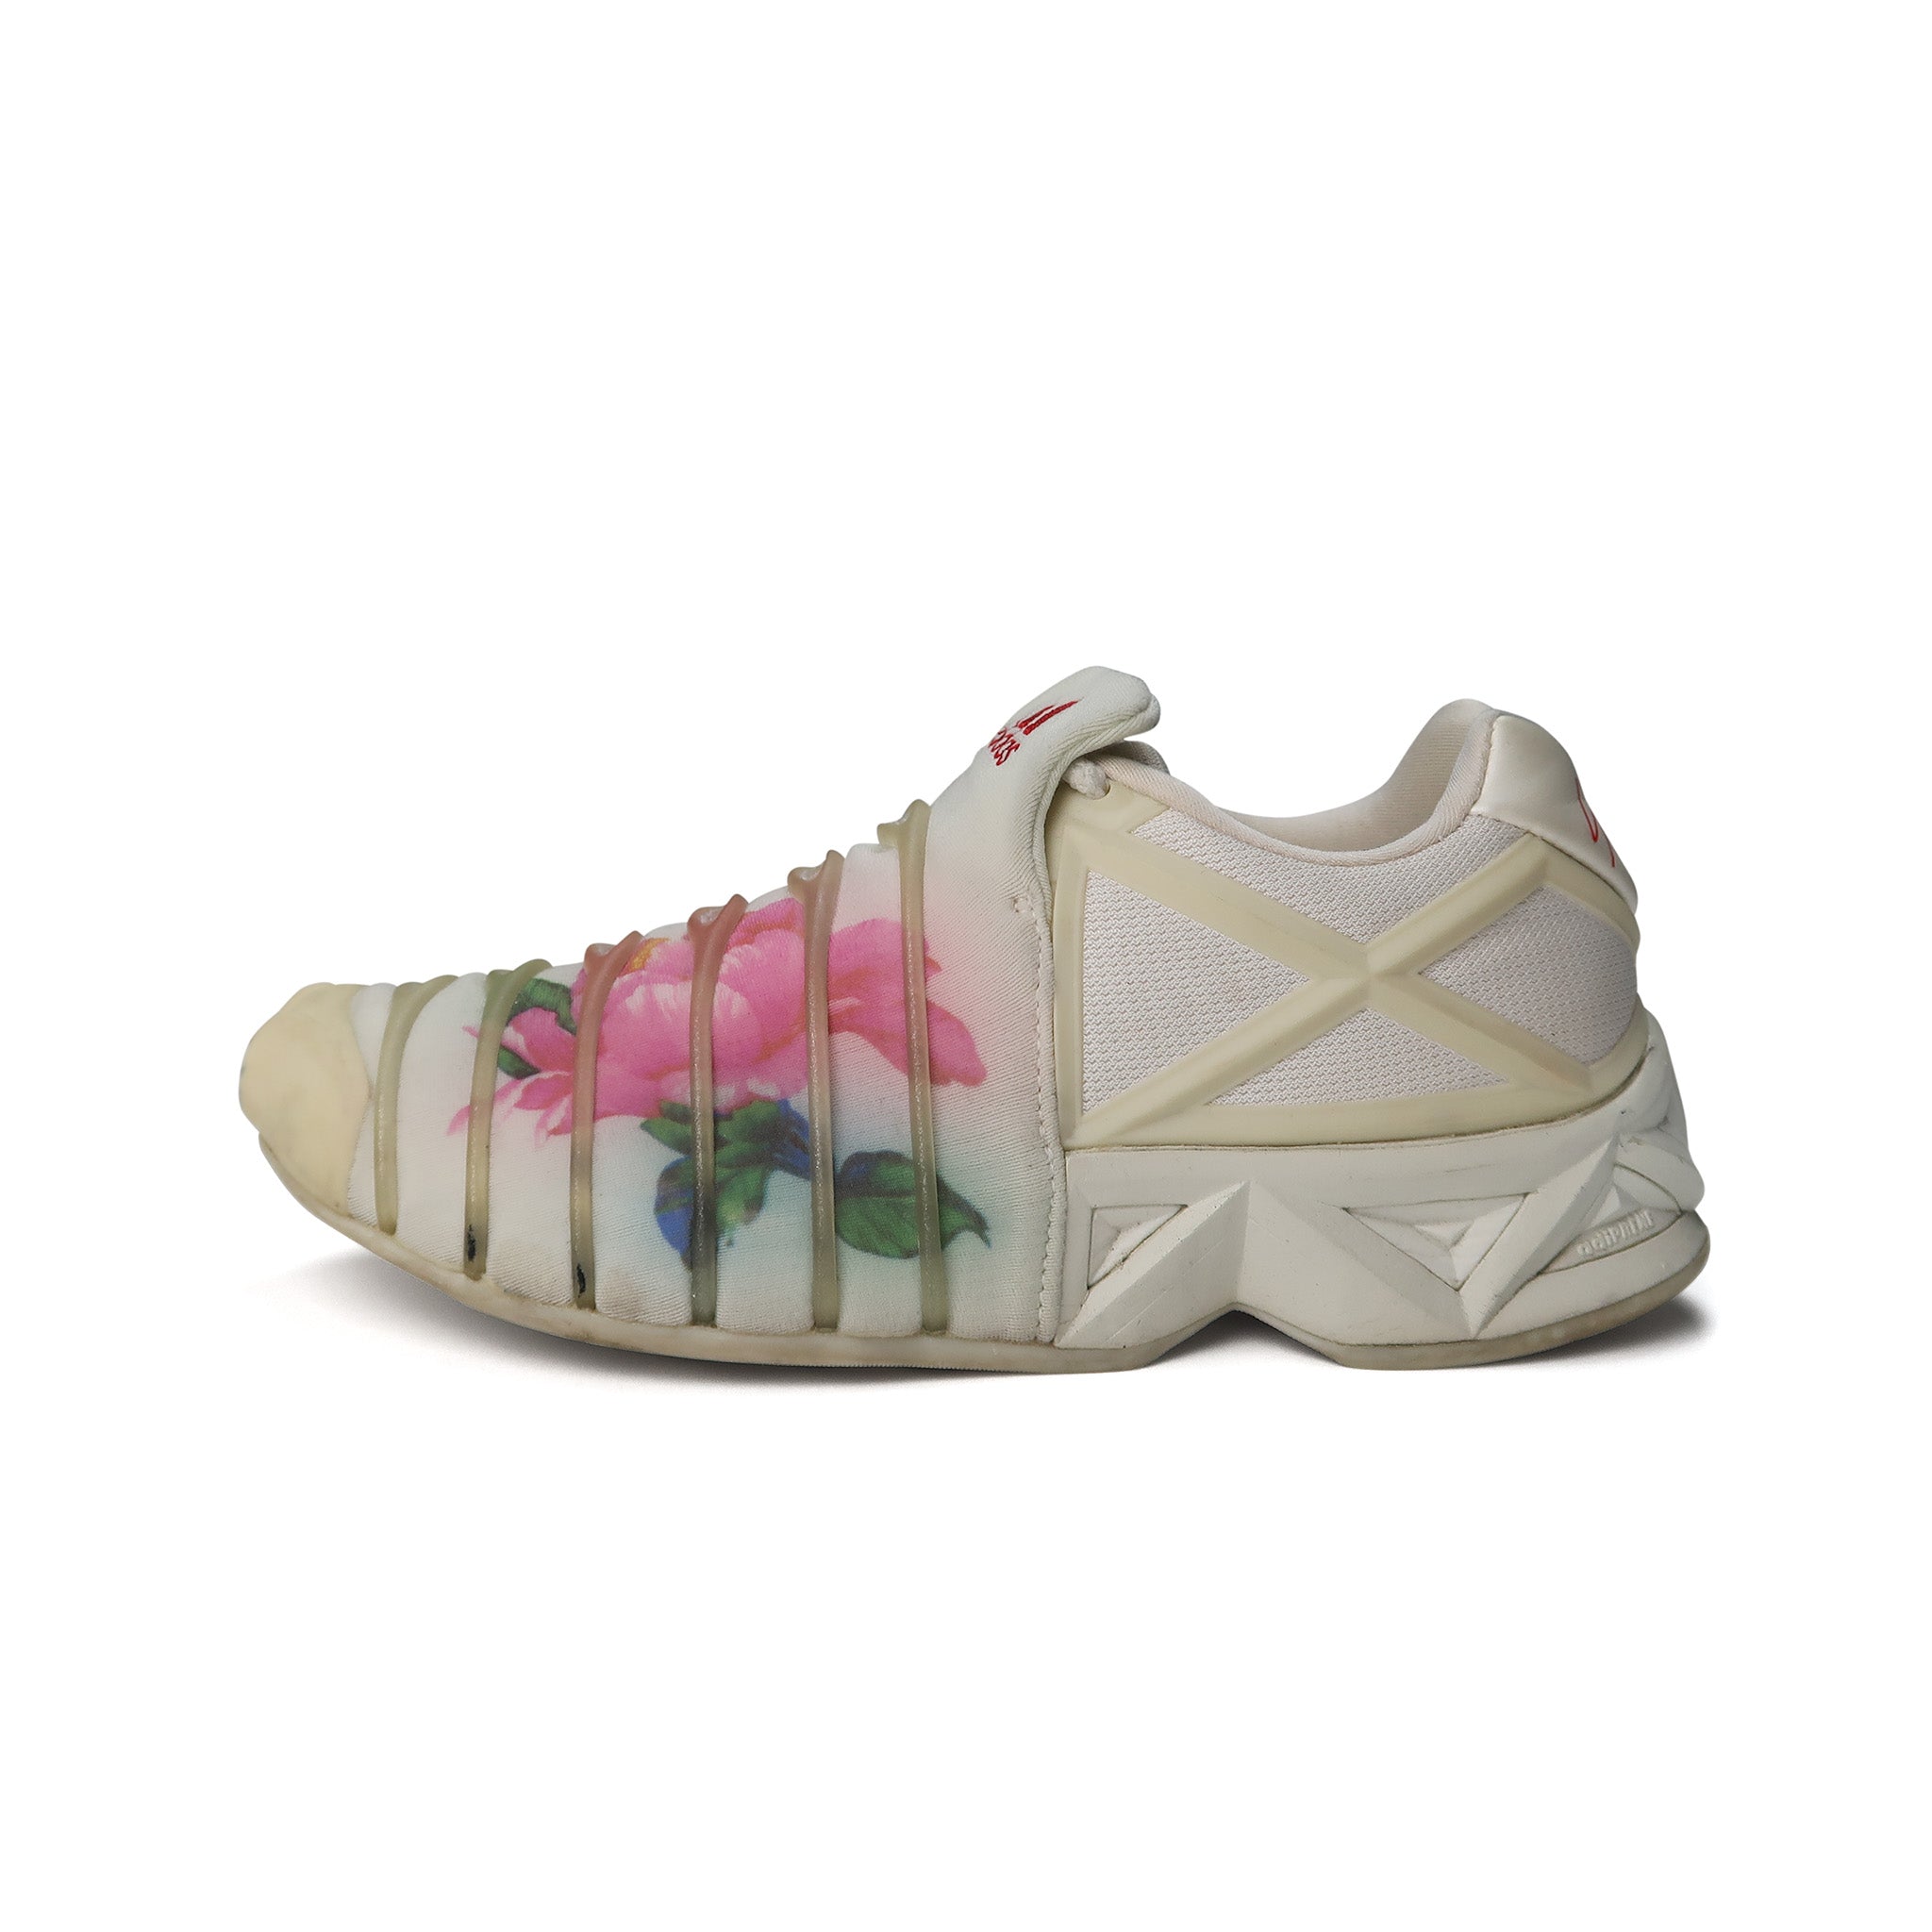 Adidas x Yohji Yamamoto – Tennet Flower Legacy/Poppy (AW 2001 